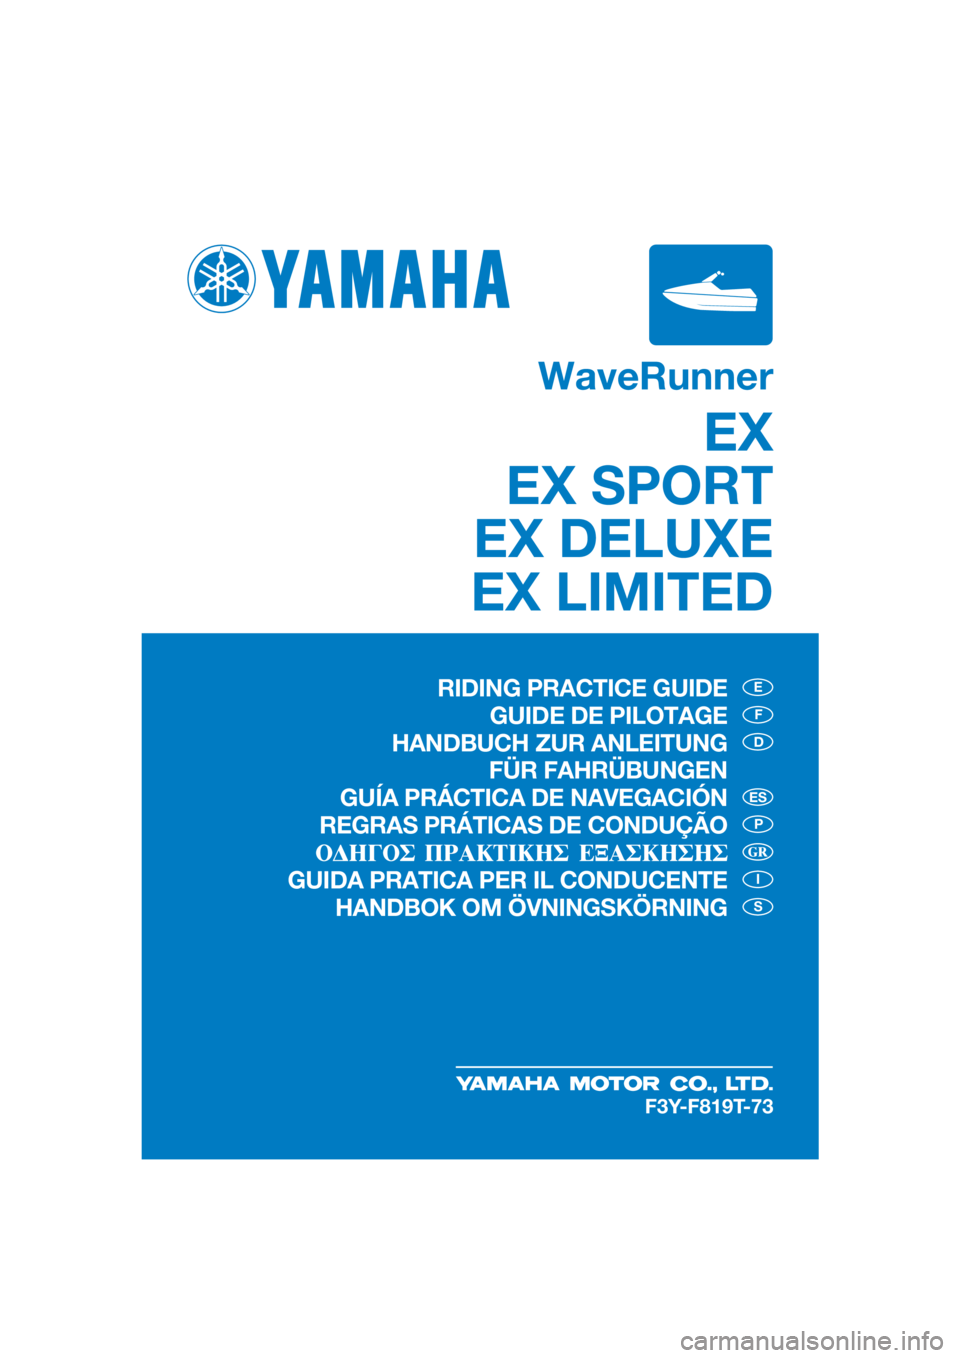 YAMAHA EX 2021  Manuale de Empleo (in Spanish) WaveRunner
EX
EX SPORT
EX DELUXE
EX LIMITED
E
F
D
P
I
S
ES
F3Y-F819T-73
RIDING PRACTICE GUIDE
GUIDE DE PILOTAGE
HANDBUCH ZUR ANLEITUNG  FÜR FAHRÜBUNGEN
GUÍA PRÁCTICA DE NAVEGACIÓN
REGRAS PRÁTICA